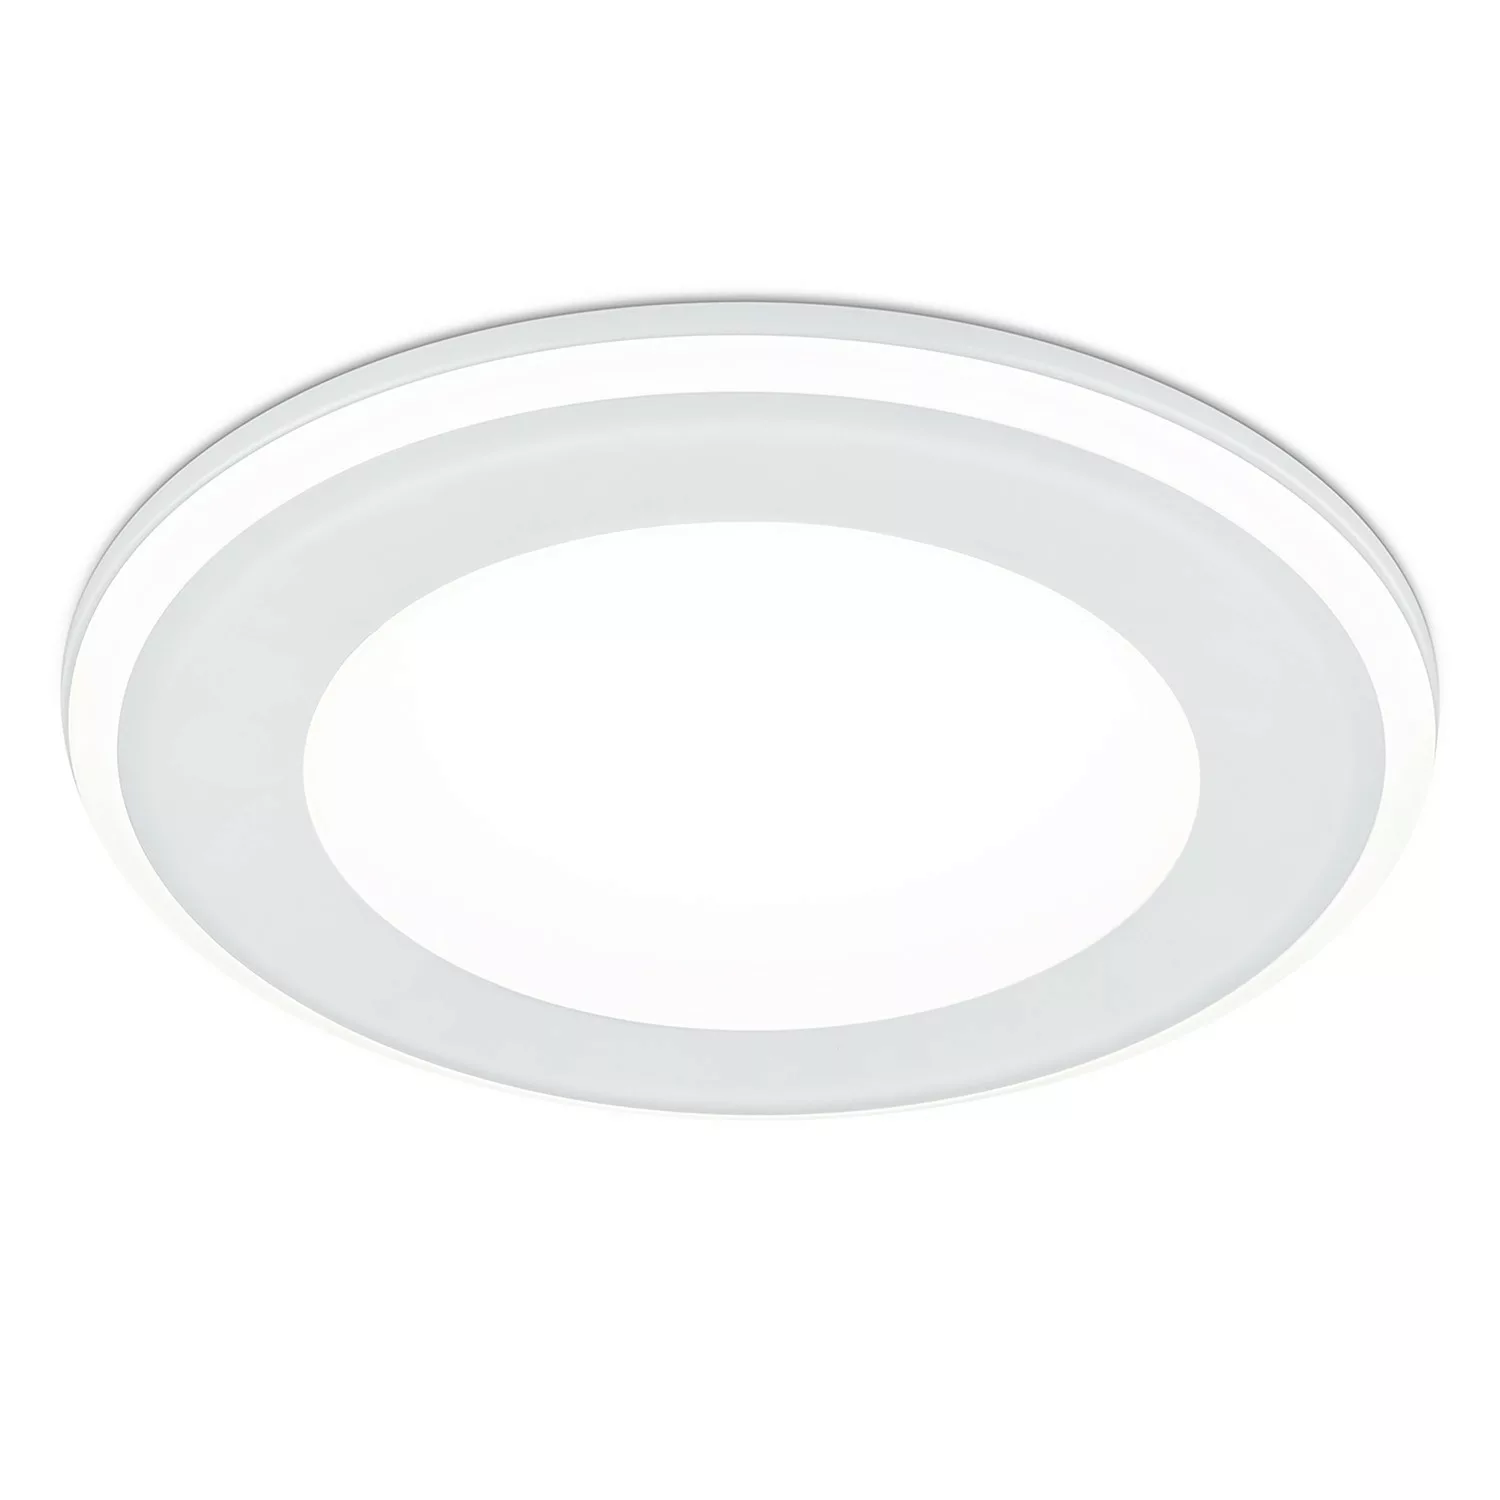 LED Einbauleuchte Aura in Weiß-Matt 10w 1040lm 148mm günstig online kaufen